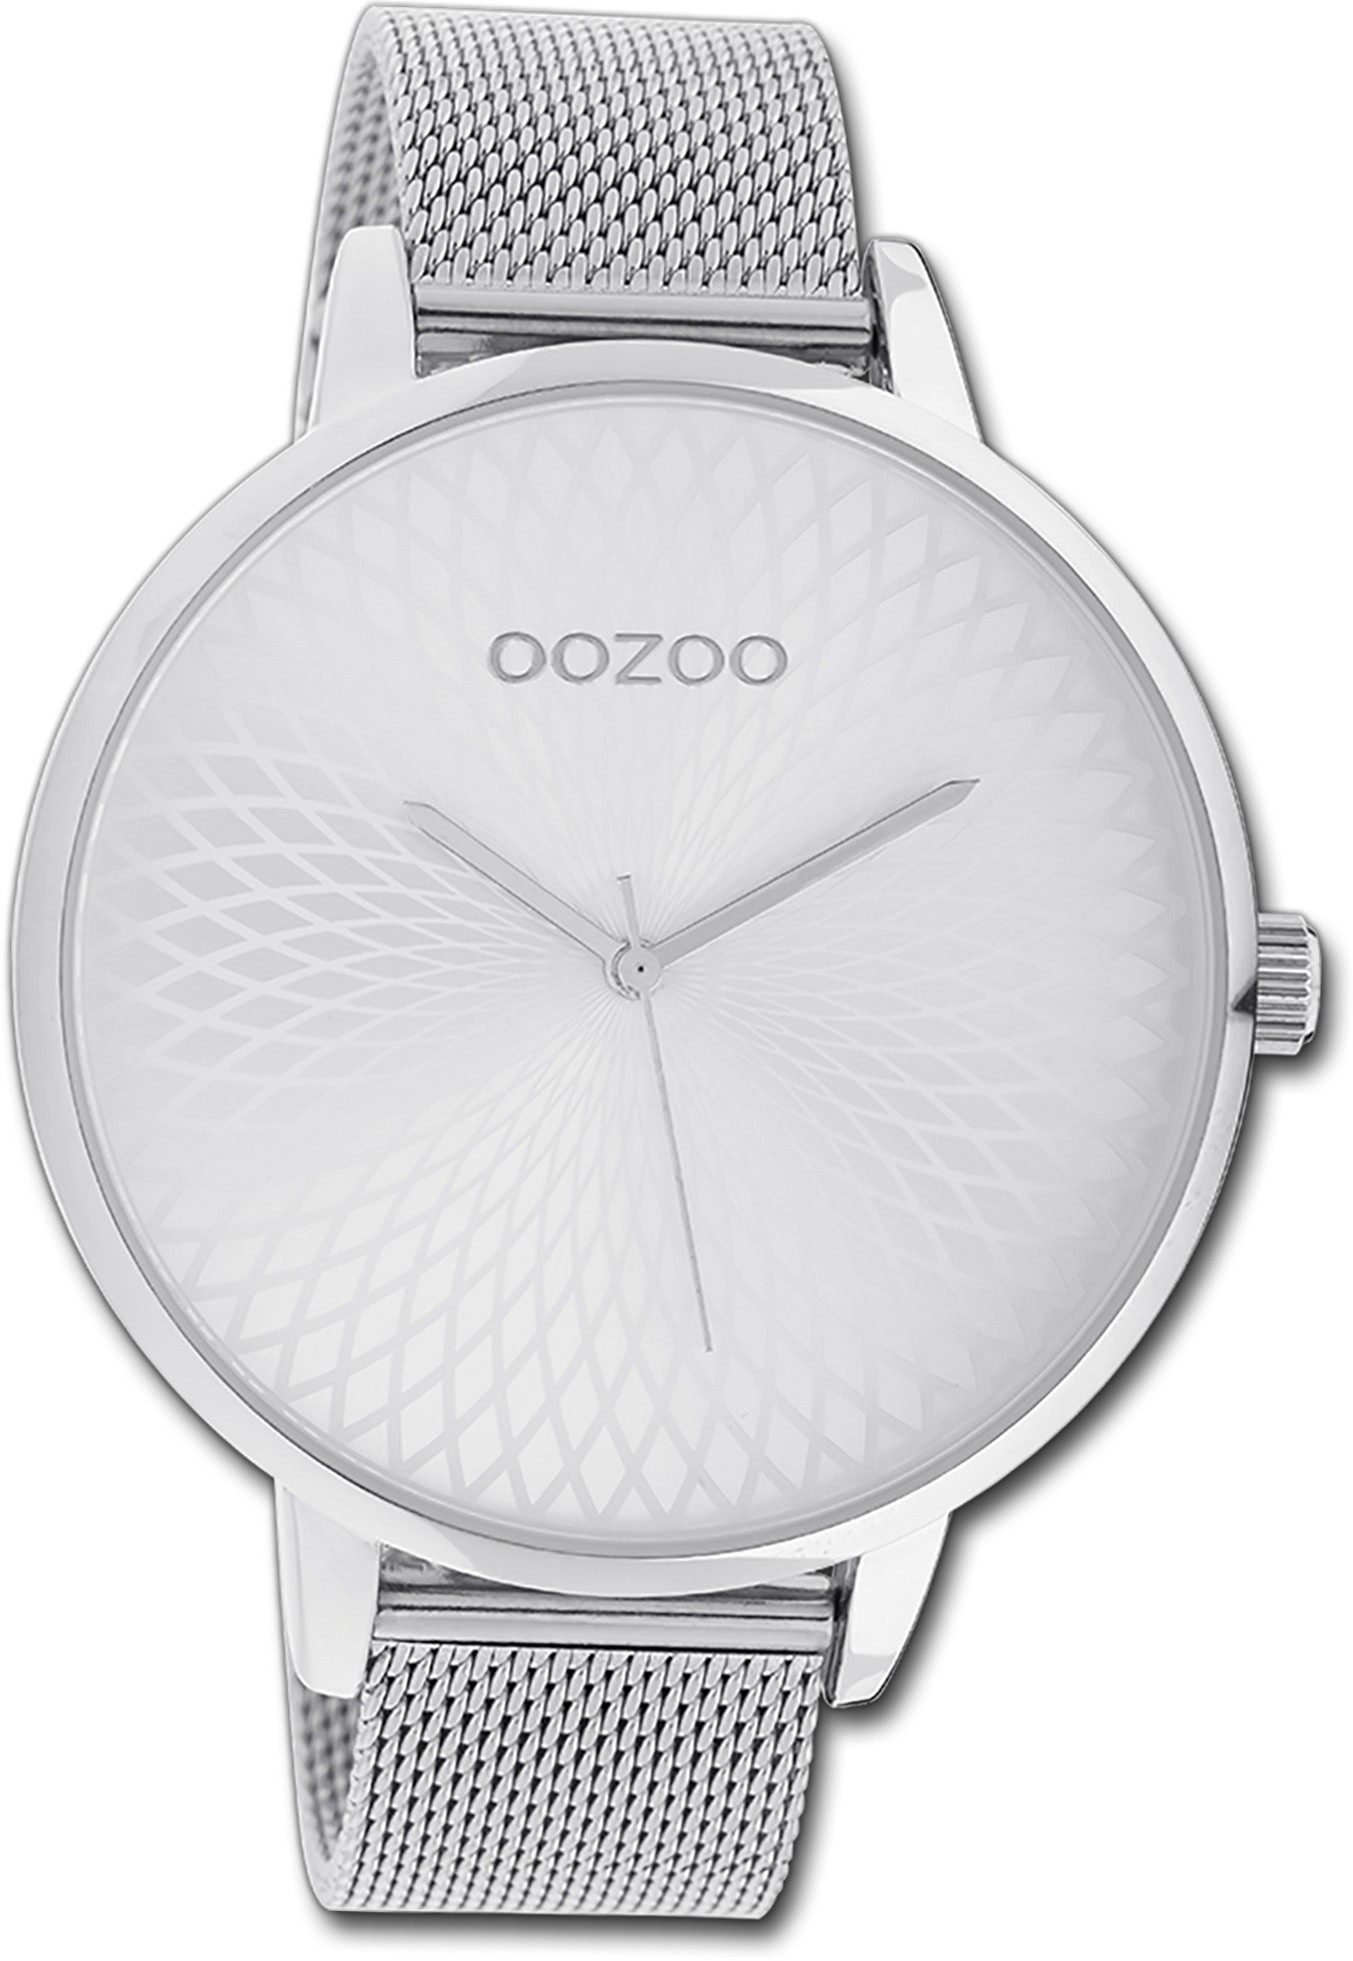 OOZOO Quarzuhr Oozoo Unisex Armbanduhr Timepieces, (Analoguhr), Unisexuhr Metallarmband silber, rundes Gehäuse, extra groß (ca. 48mm)